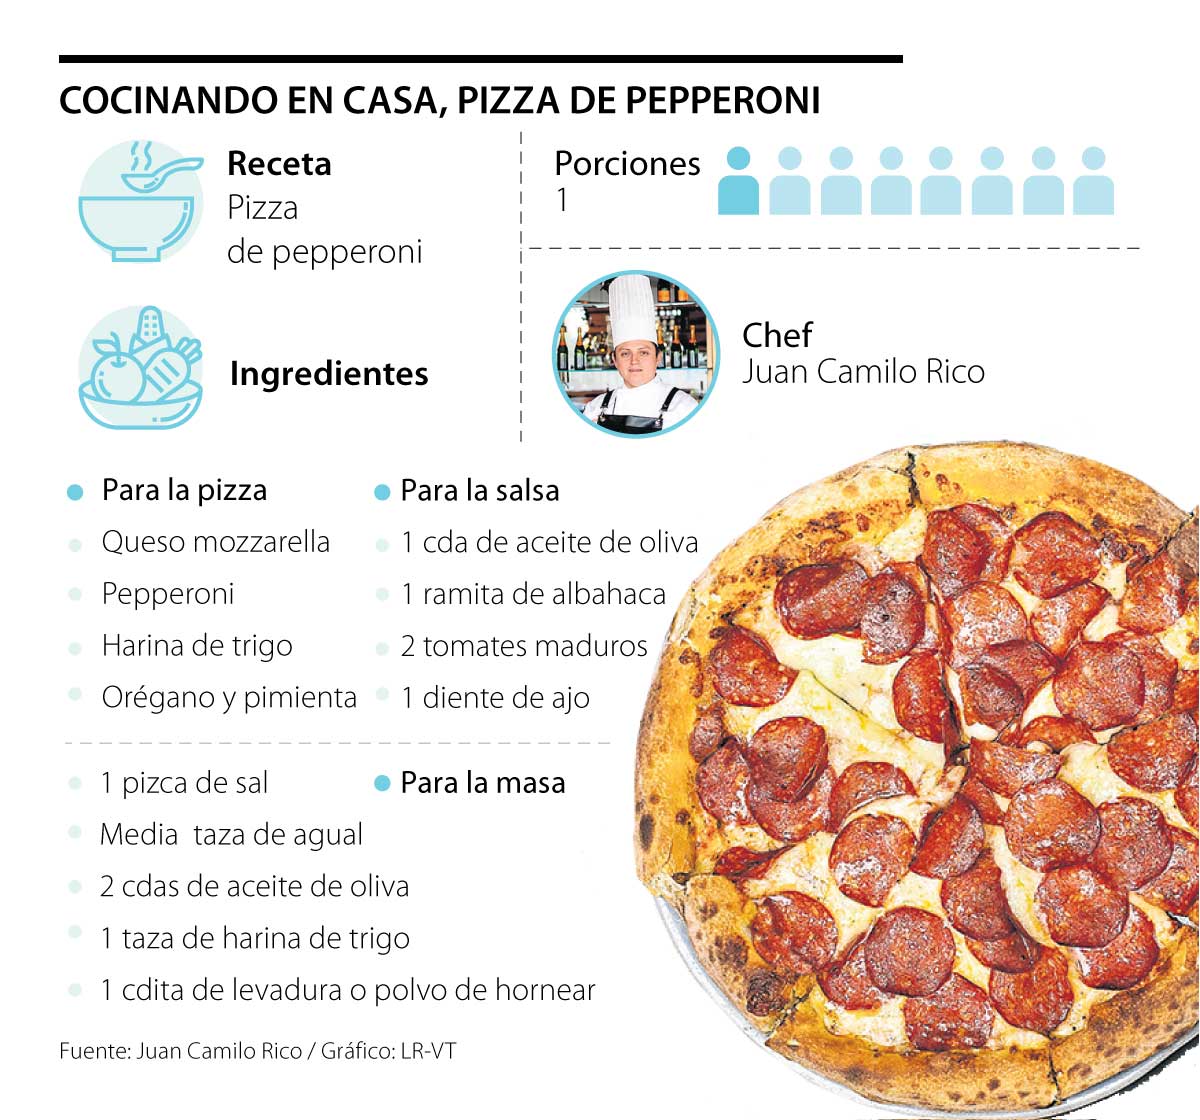 технологическая карта пицца пепперони фото 91